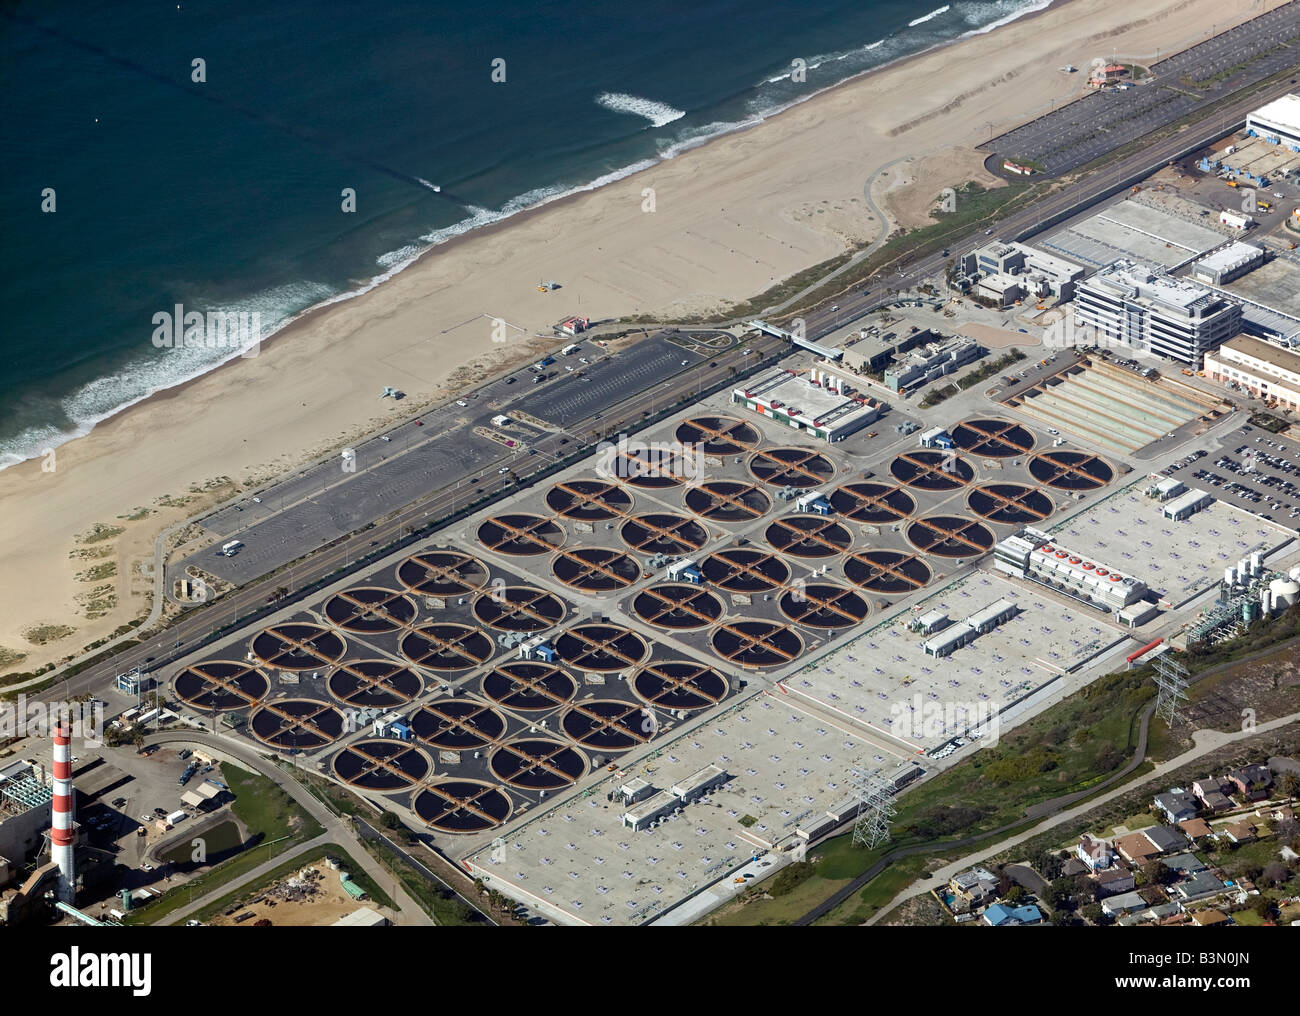 Vue aérienne au-dessus de la grande usine de traitement des eaux usées Hyperion Océan Pacifique Los Angeles Californie, select99 Banque D'Images